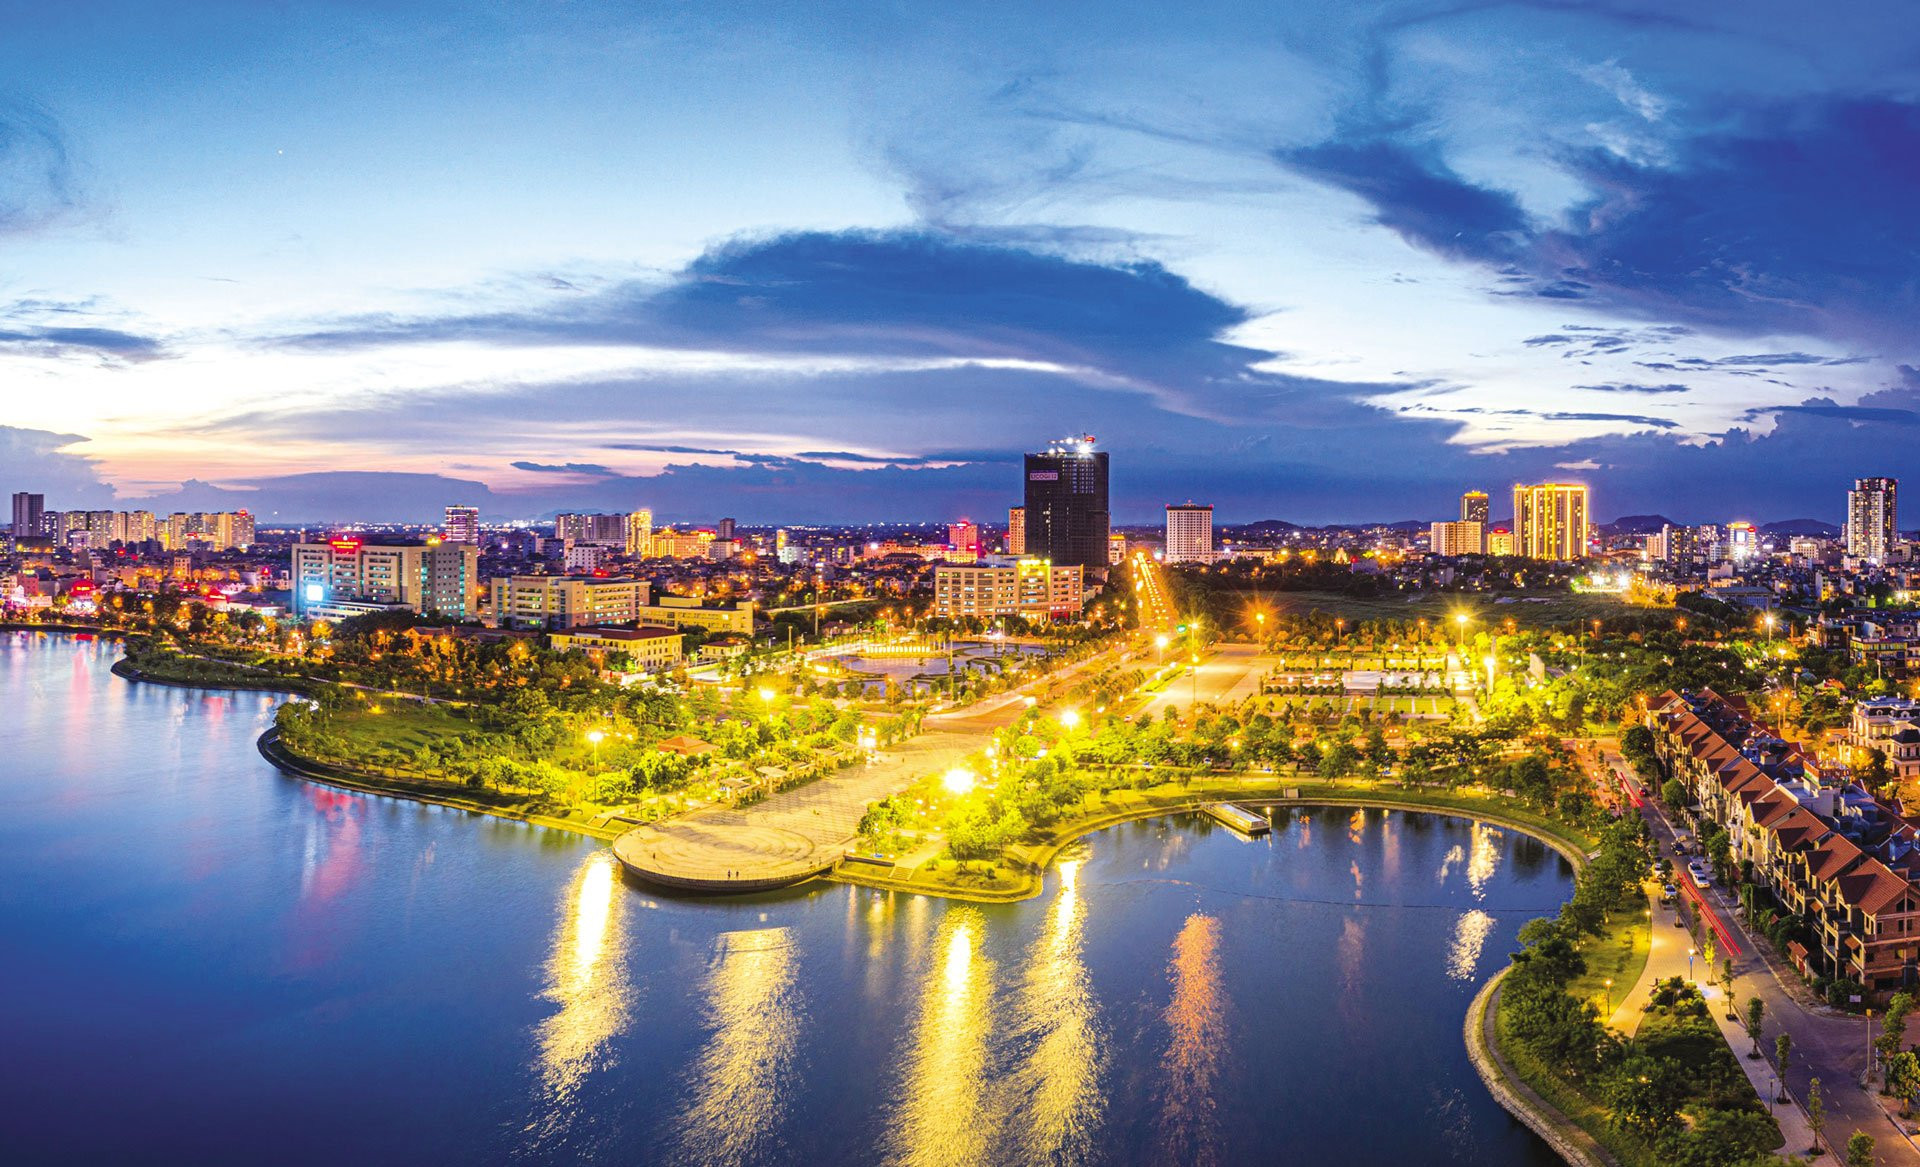 Đến năm 2030, tỉnh Bắc Ninh đạt các tiêu chí đô thị loại I và trở thành thành phố trực thuộc Trung ương. Ảnh: VnEconomy